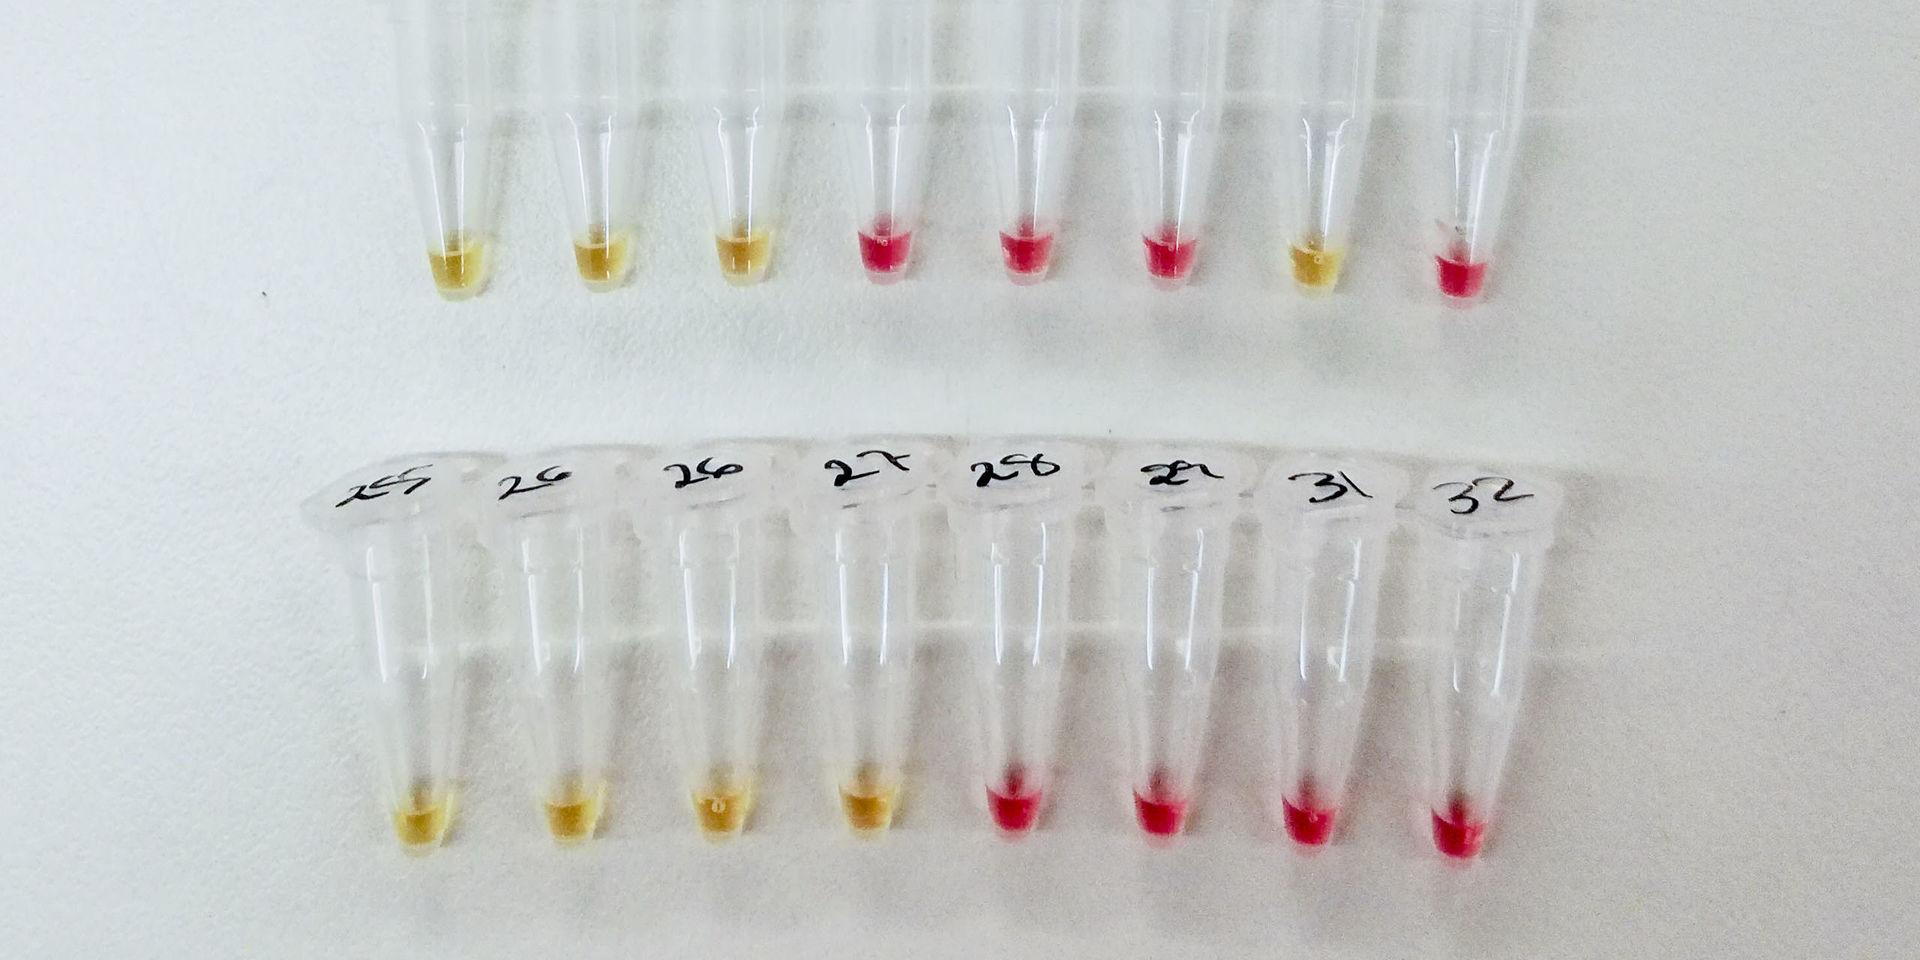 Efter cirka 30 minuter i 65 grader ändras färgen från rosa till gult om det finns virusgener i provet. Hittills har testerna gjorts med syntetiska virusgener i laboratoriemiljö. Nästa steg är att testa om metoden ger rätt svar på riktiga prover från människor.